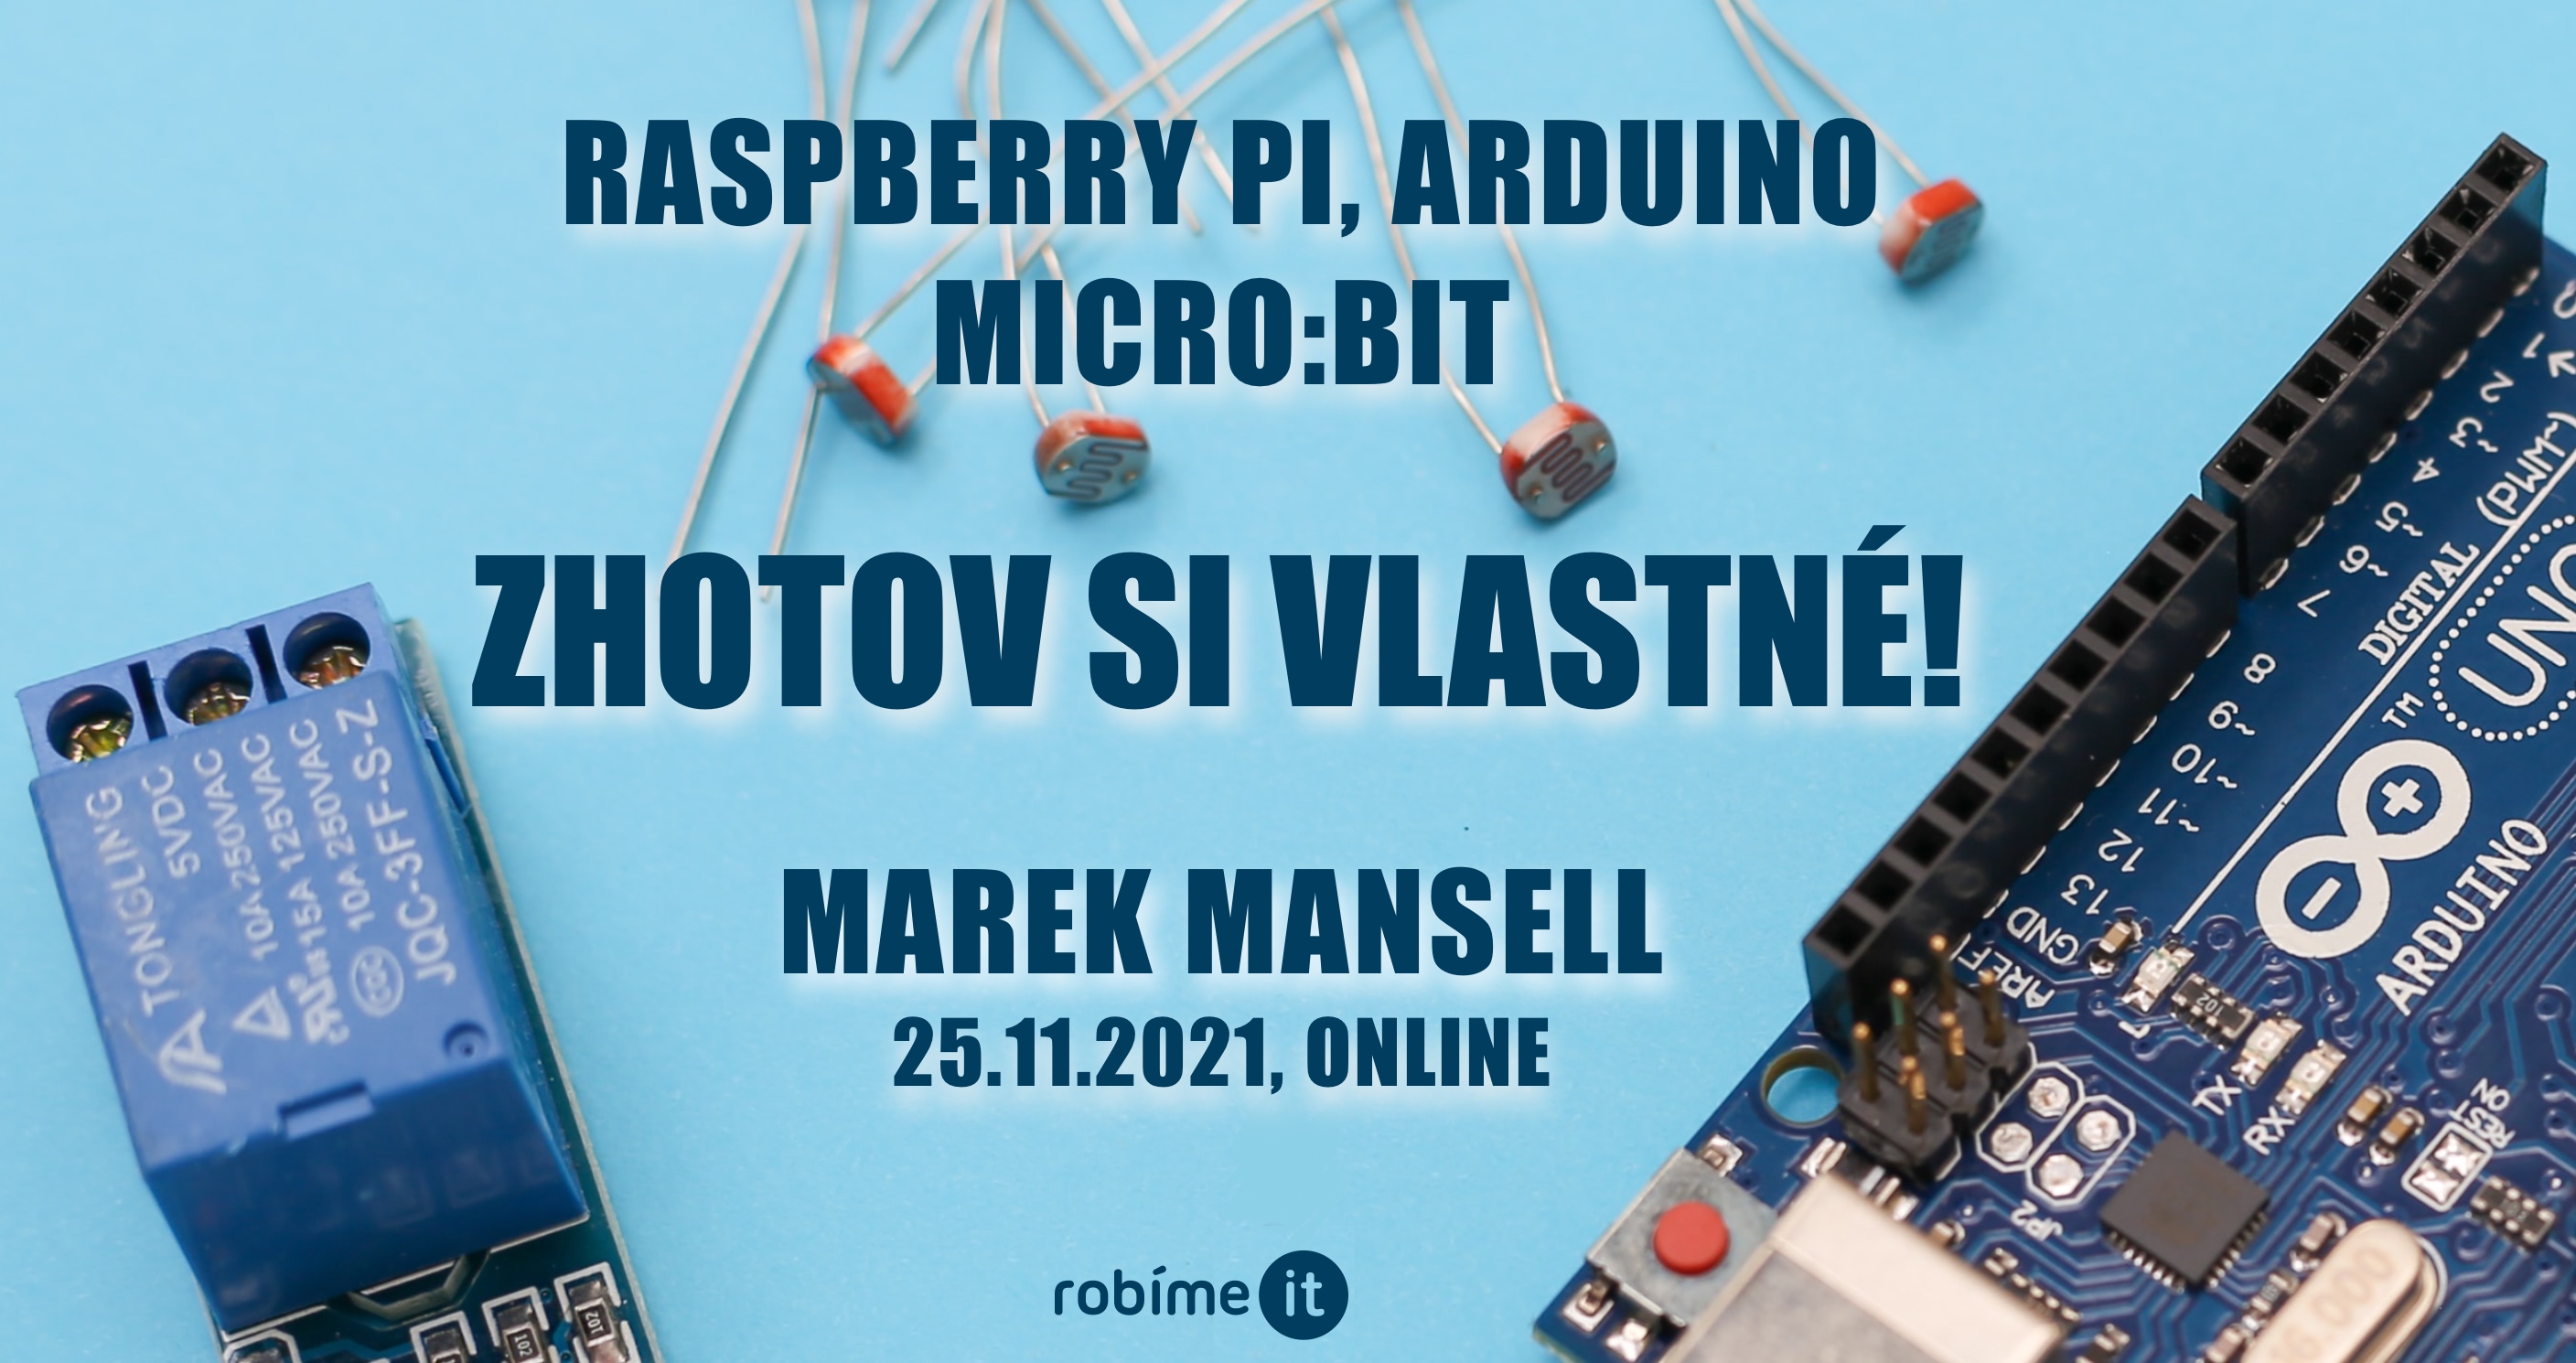 Raspberry Pi, Arduino, Micro:bit: Zhotov si vlastné! - podujatie na tickpo-sk